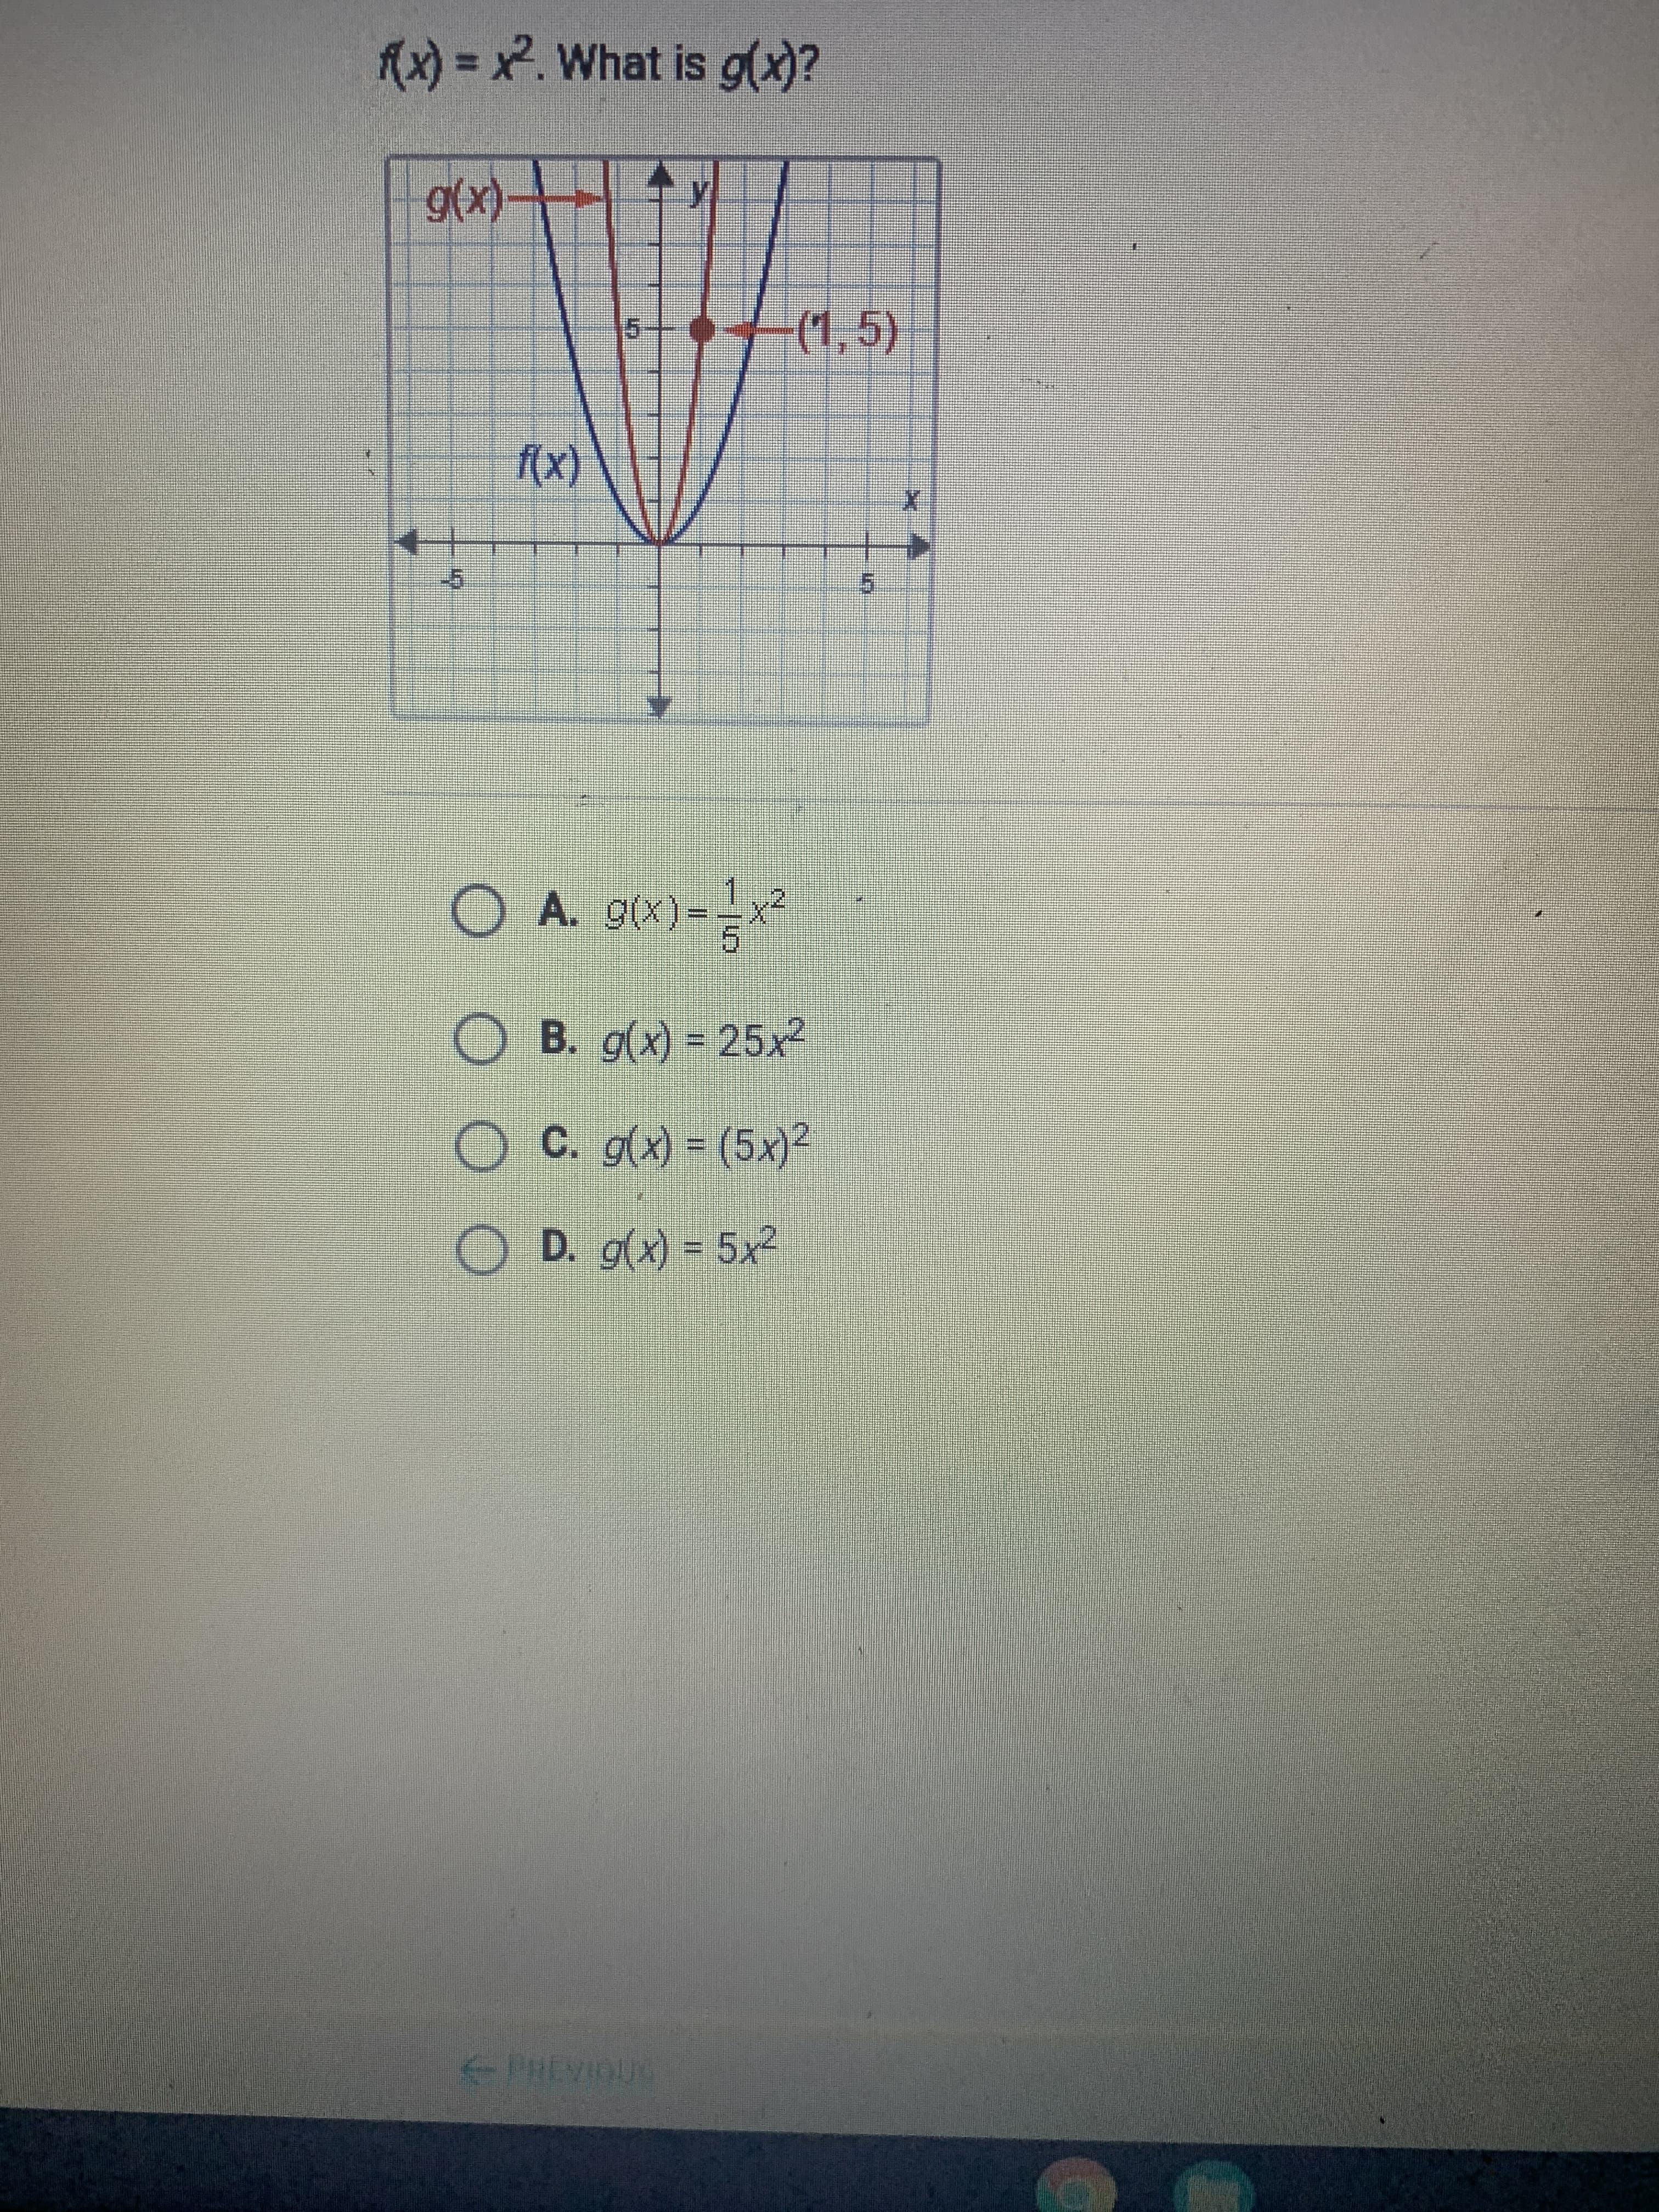 (x) = x. What is g(x)?
g(x)-
(1,5)
15
f(x)
